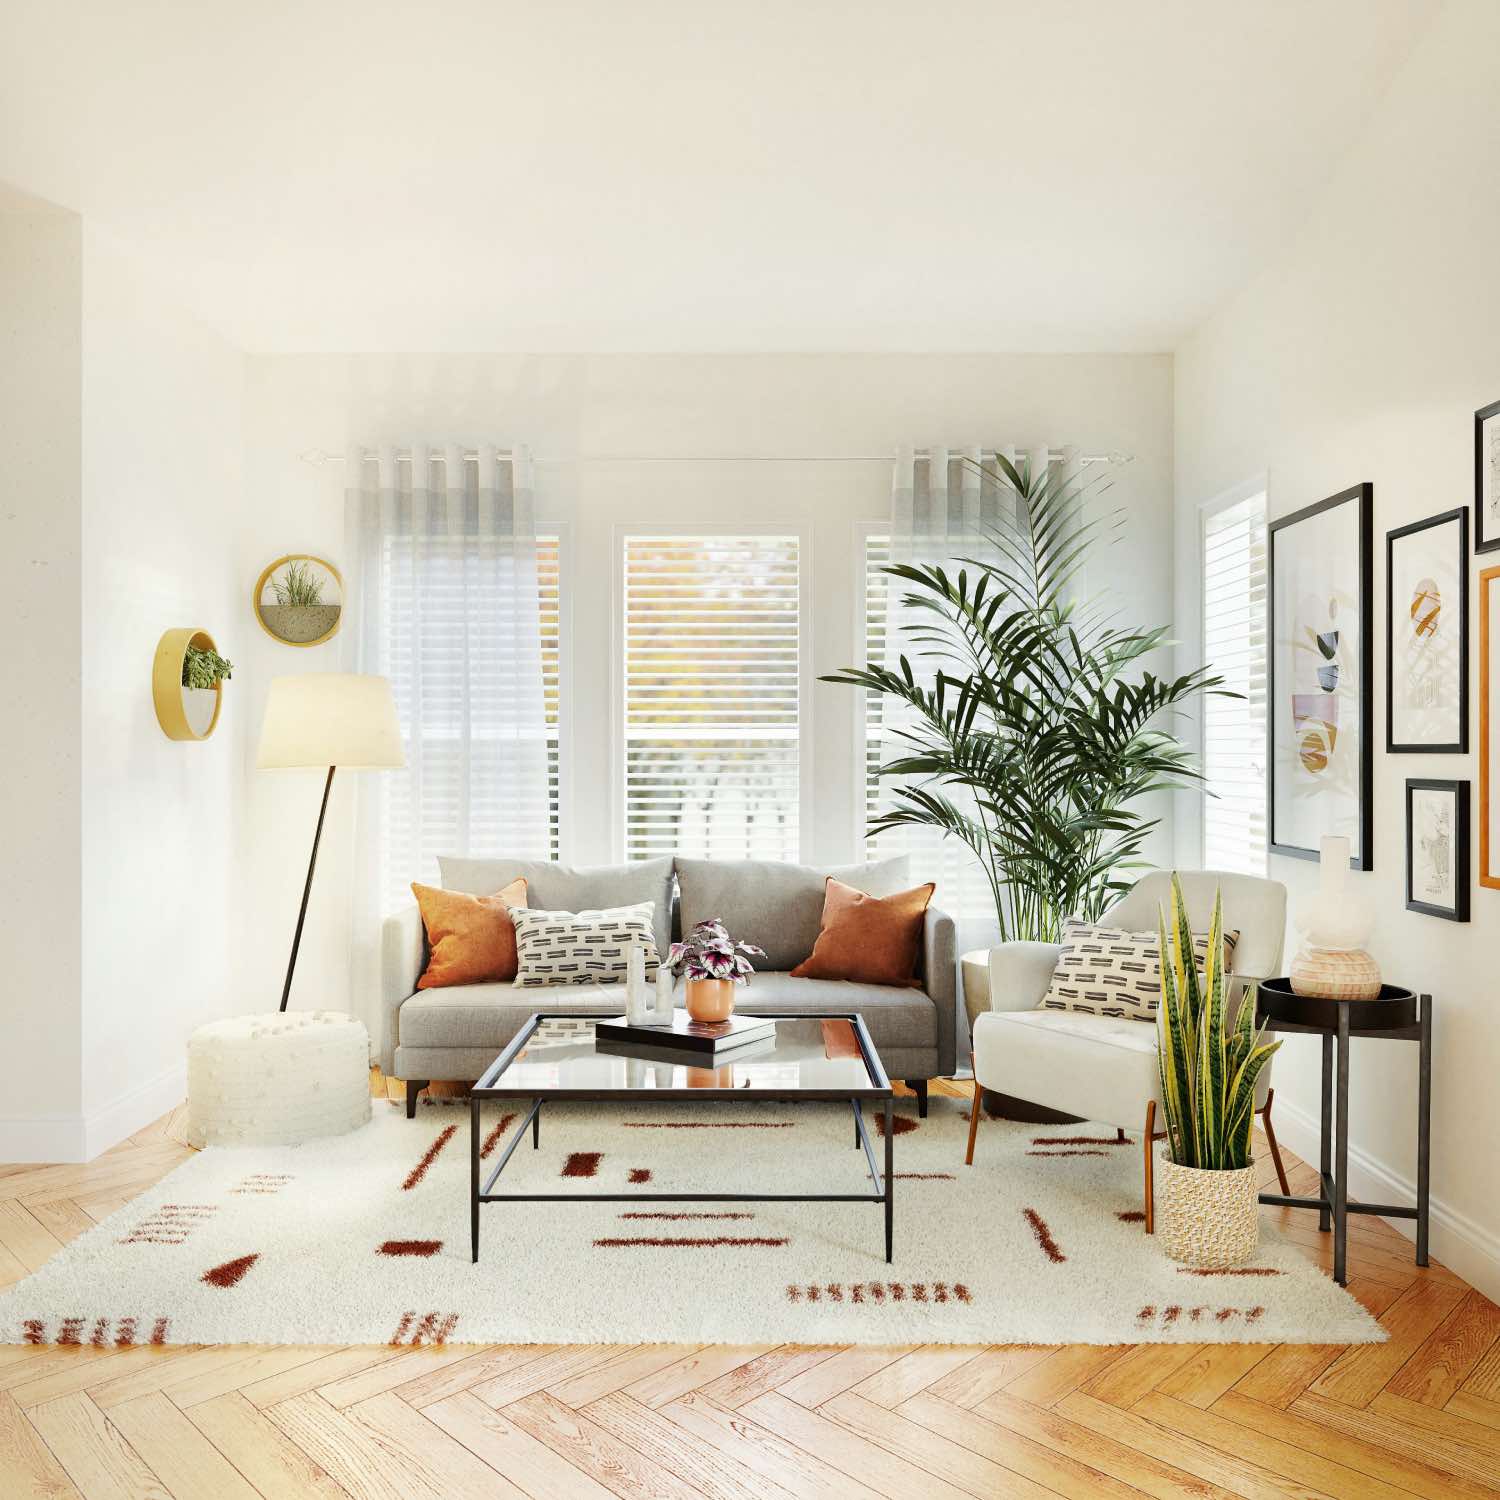 diseño de sala de estar de colores blancos y grises, con plantas y decoración